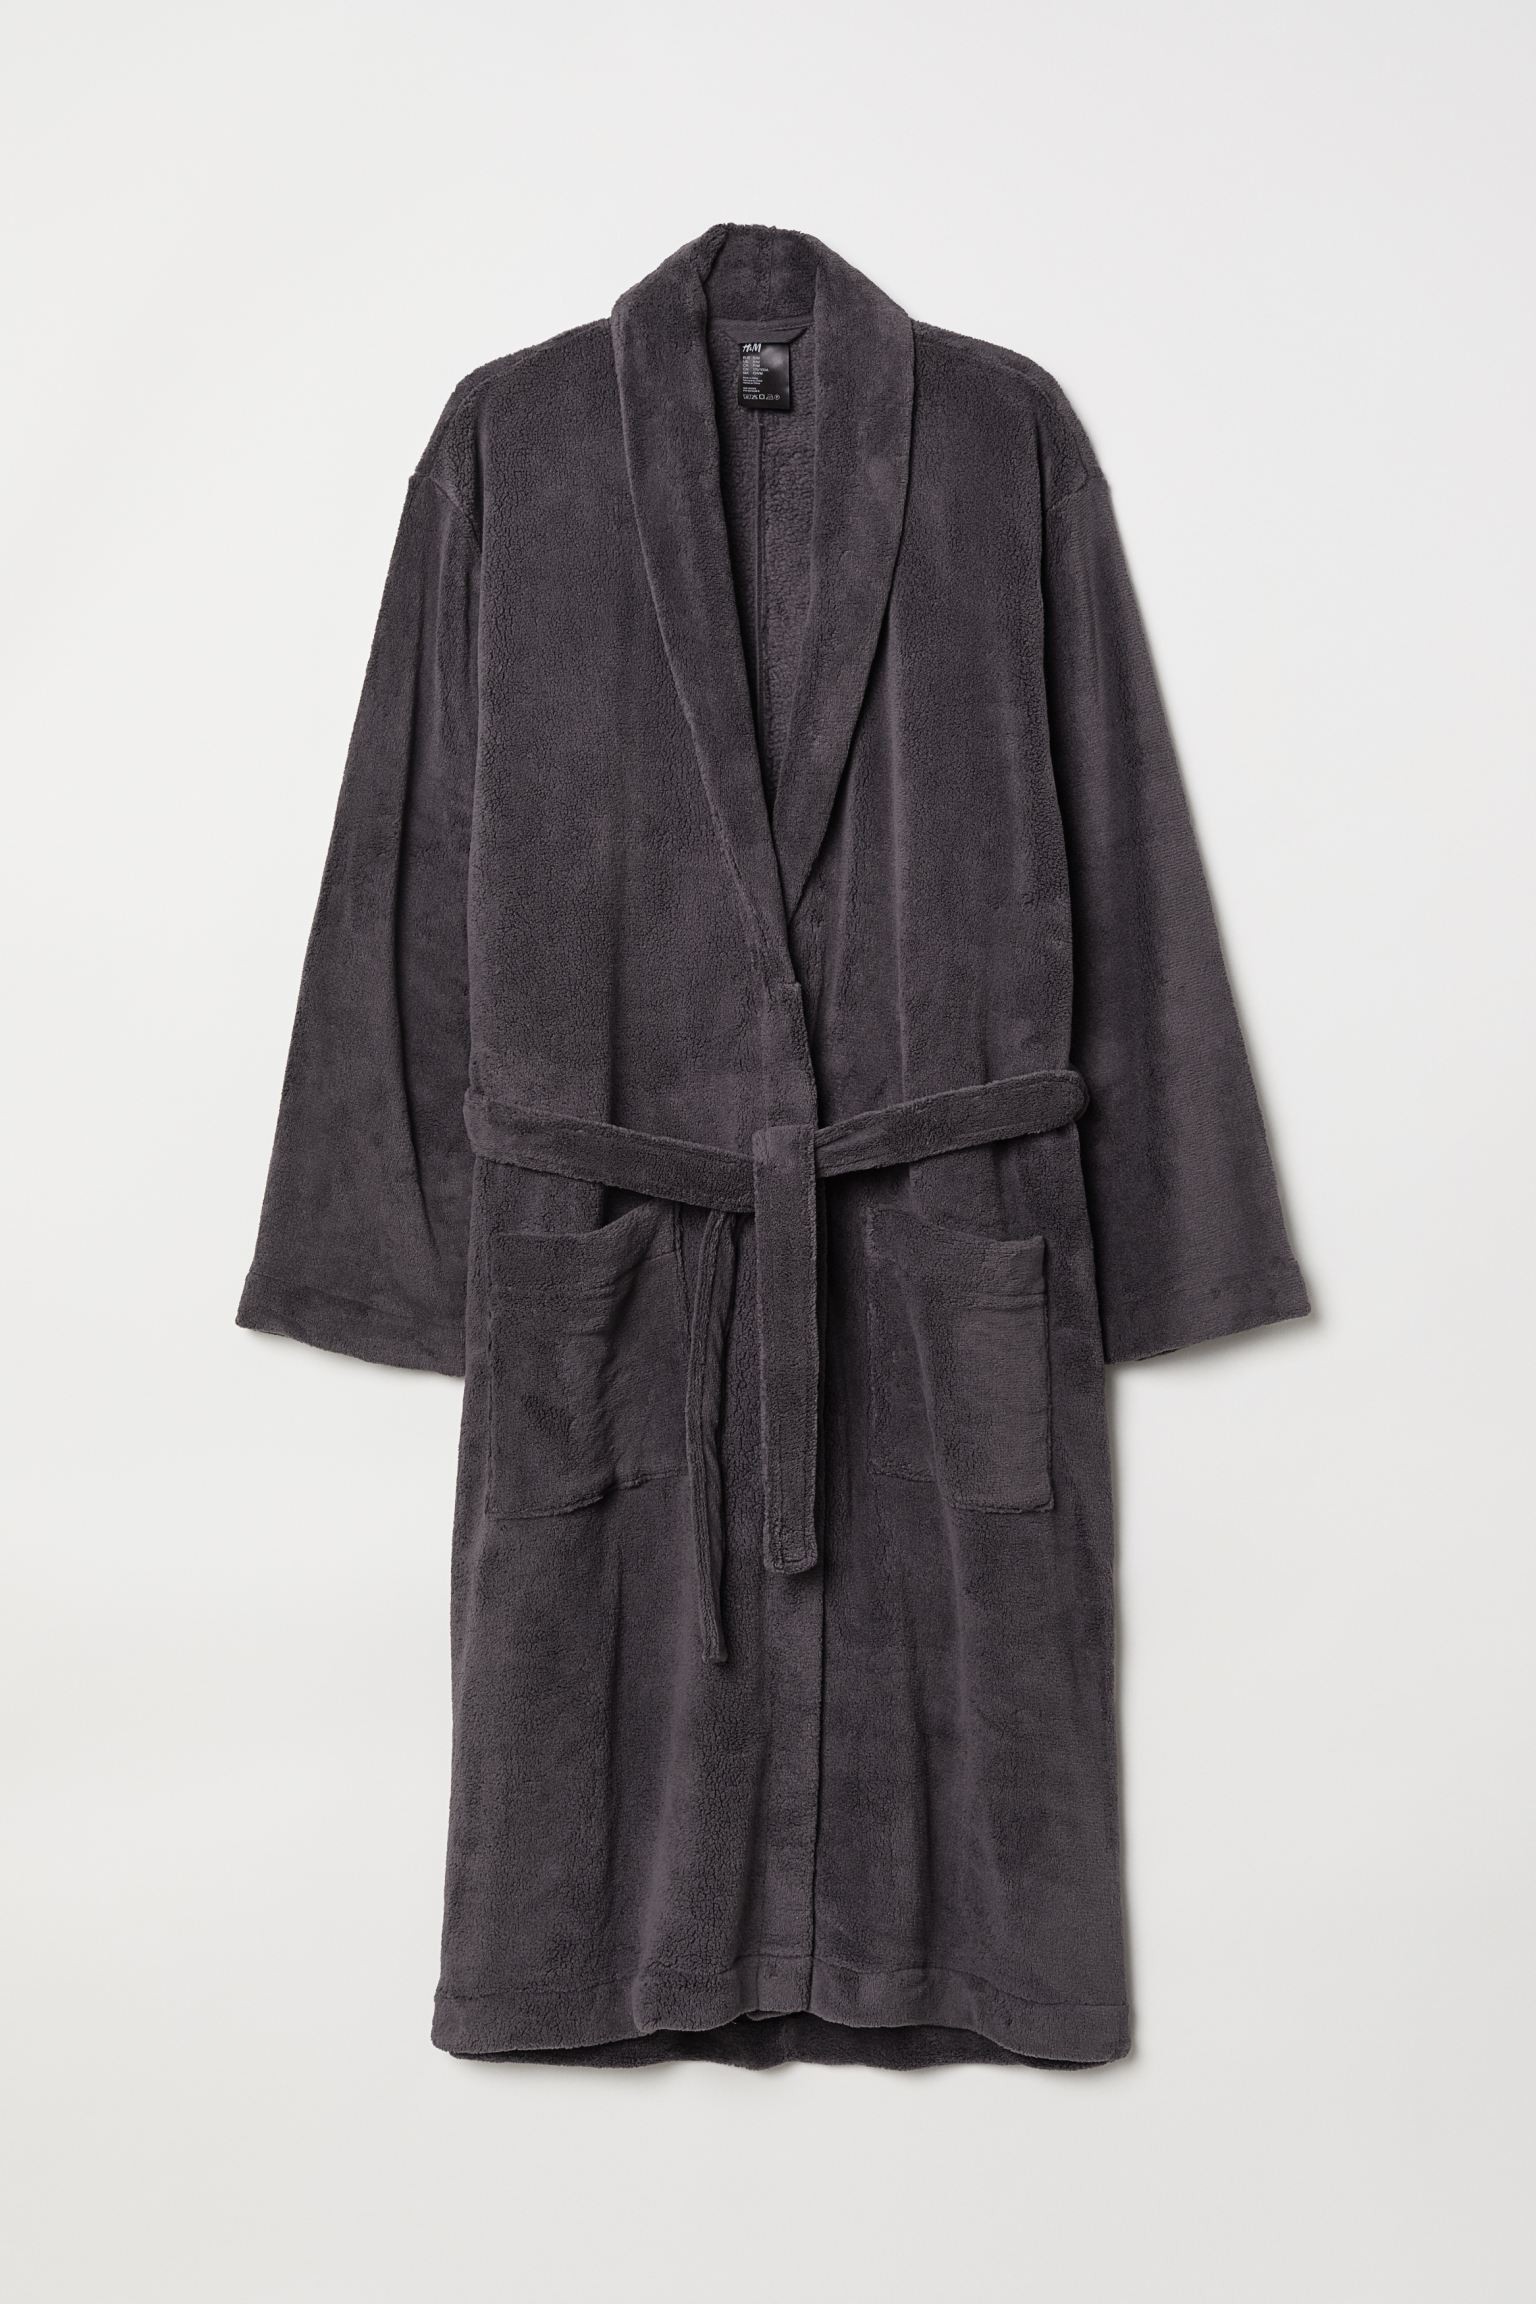 H&M Home Флисовый халат, темно-серый, Разные размеры 0575238001 | 0575238001